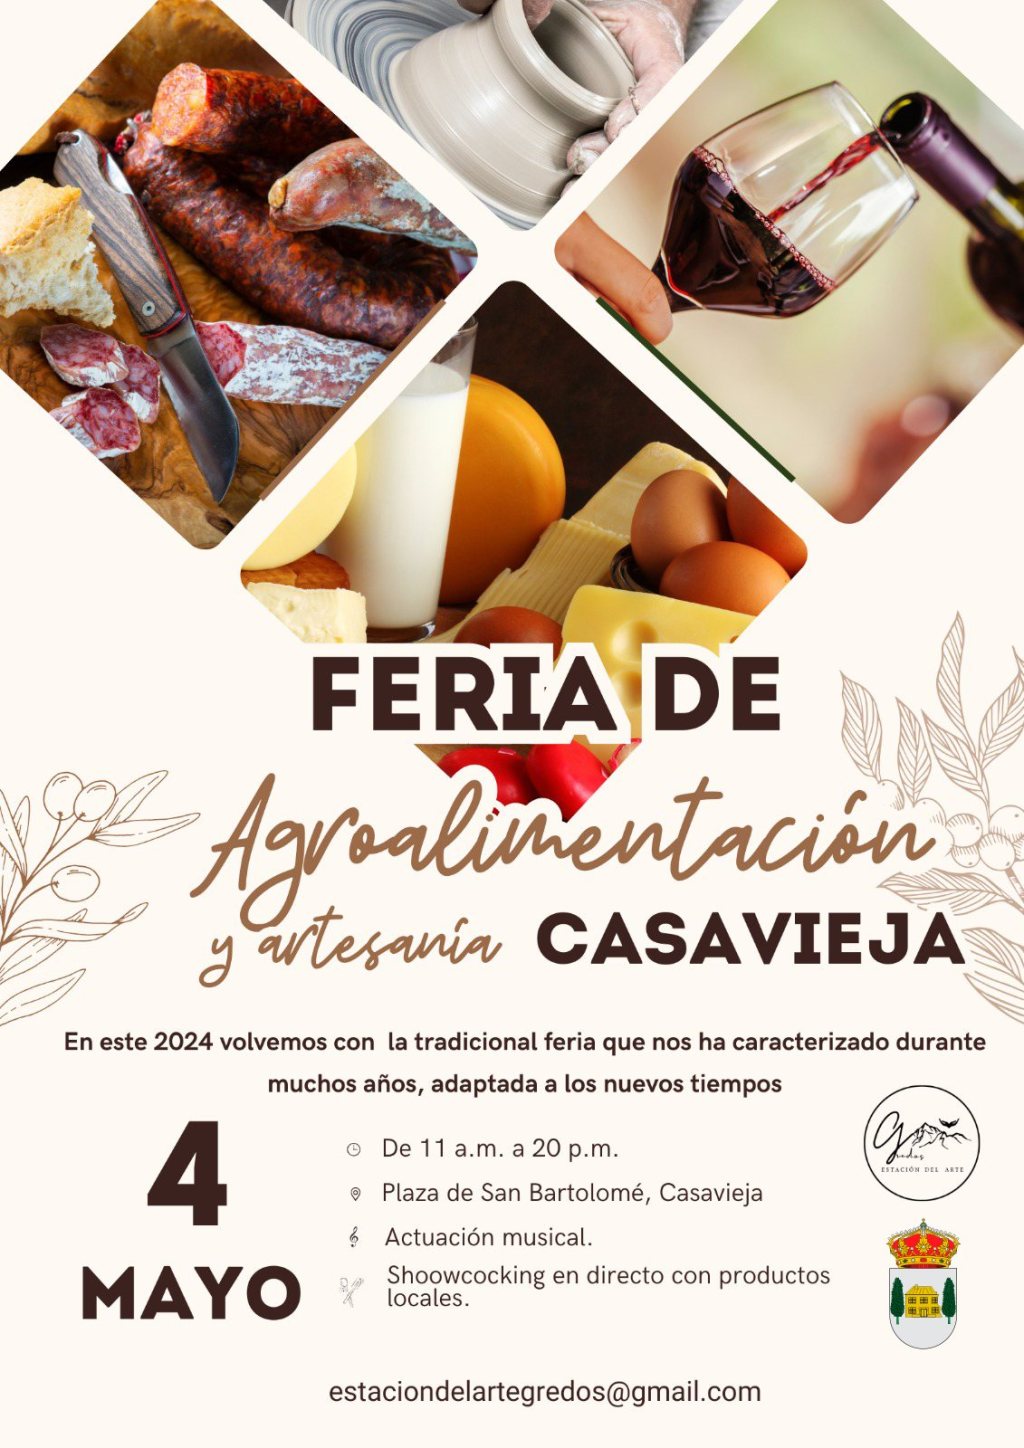 Feria de Agroalimentación y Artesanía 2024 en Casavieja